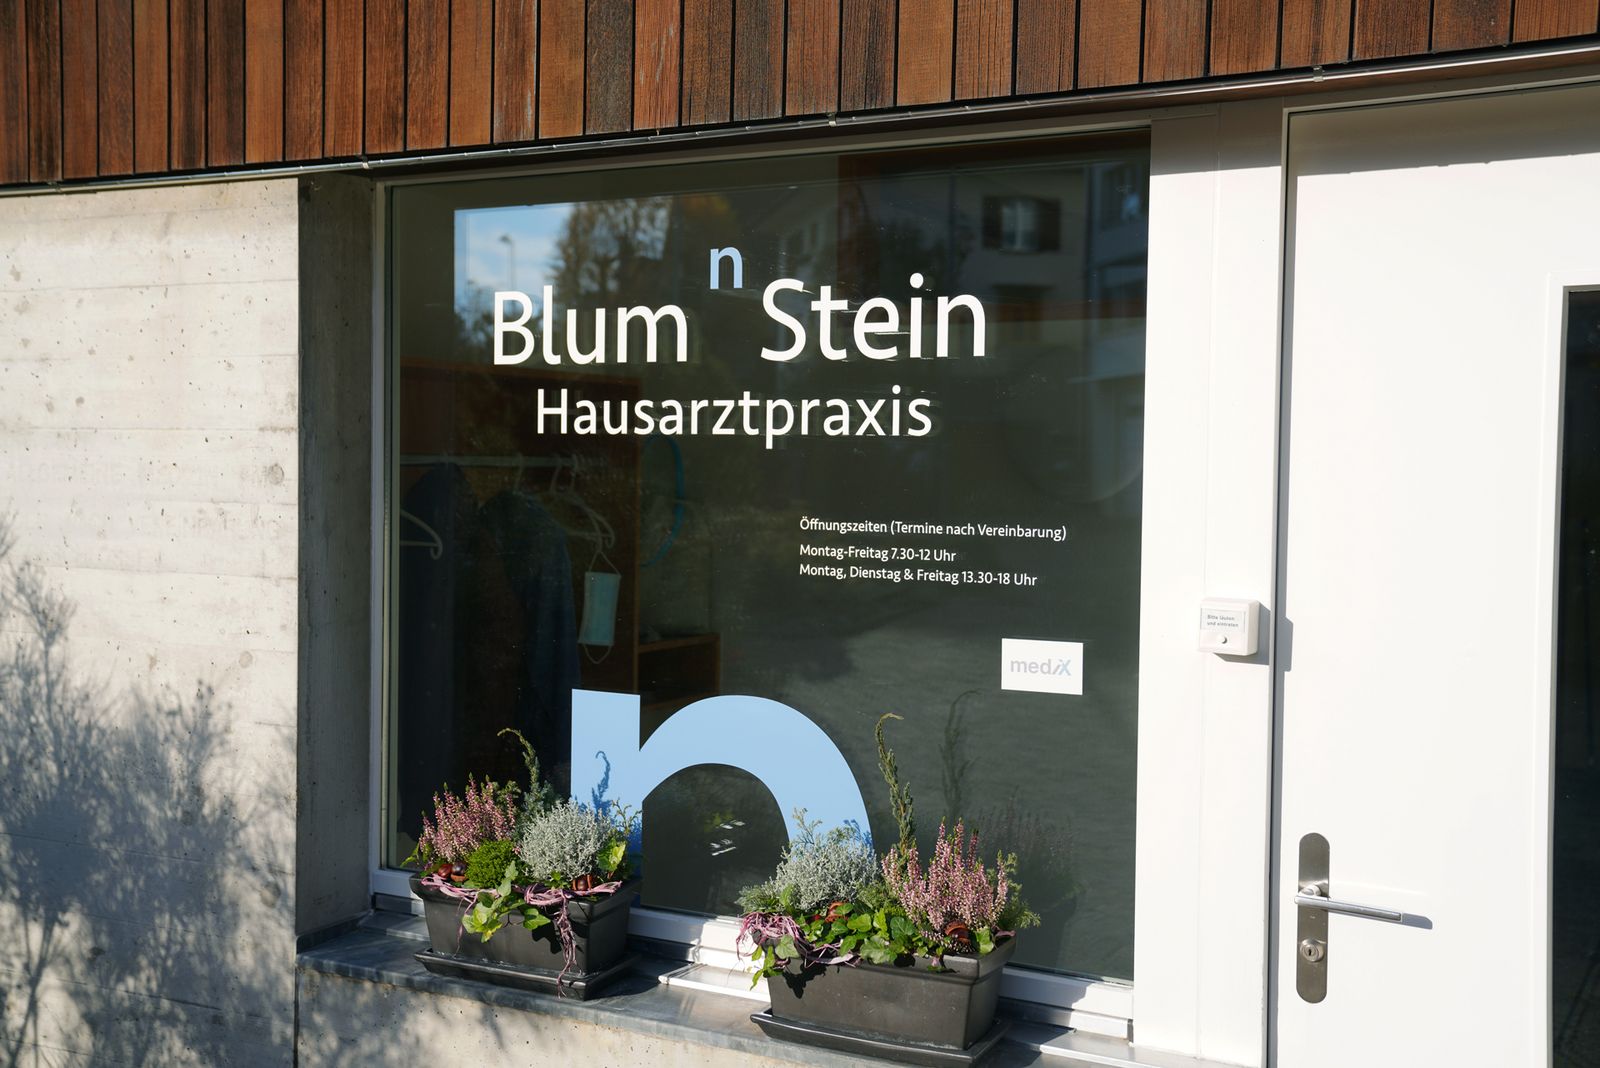 Blum 'n' Stein Hausarztpraxis 2